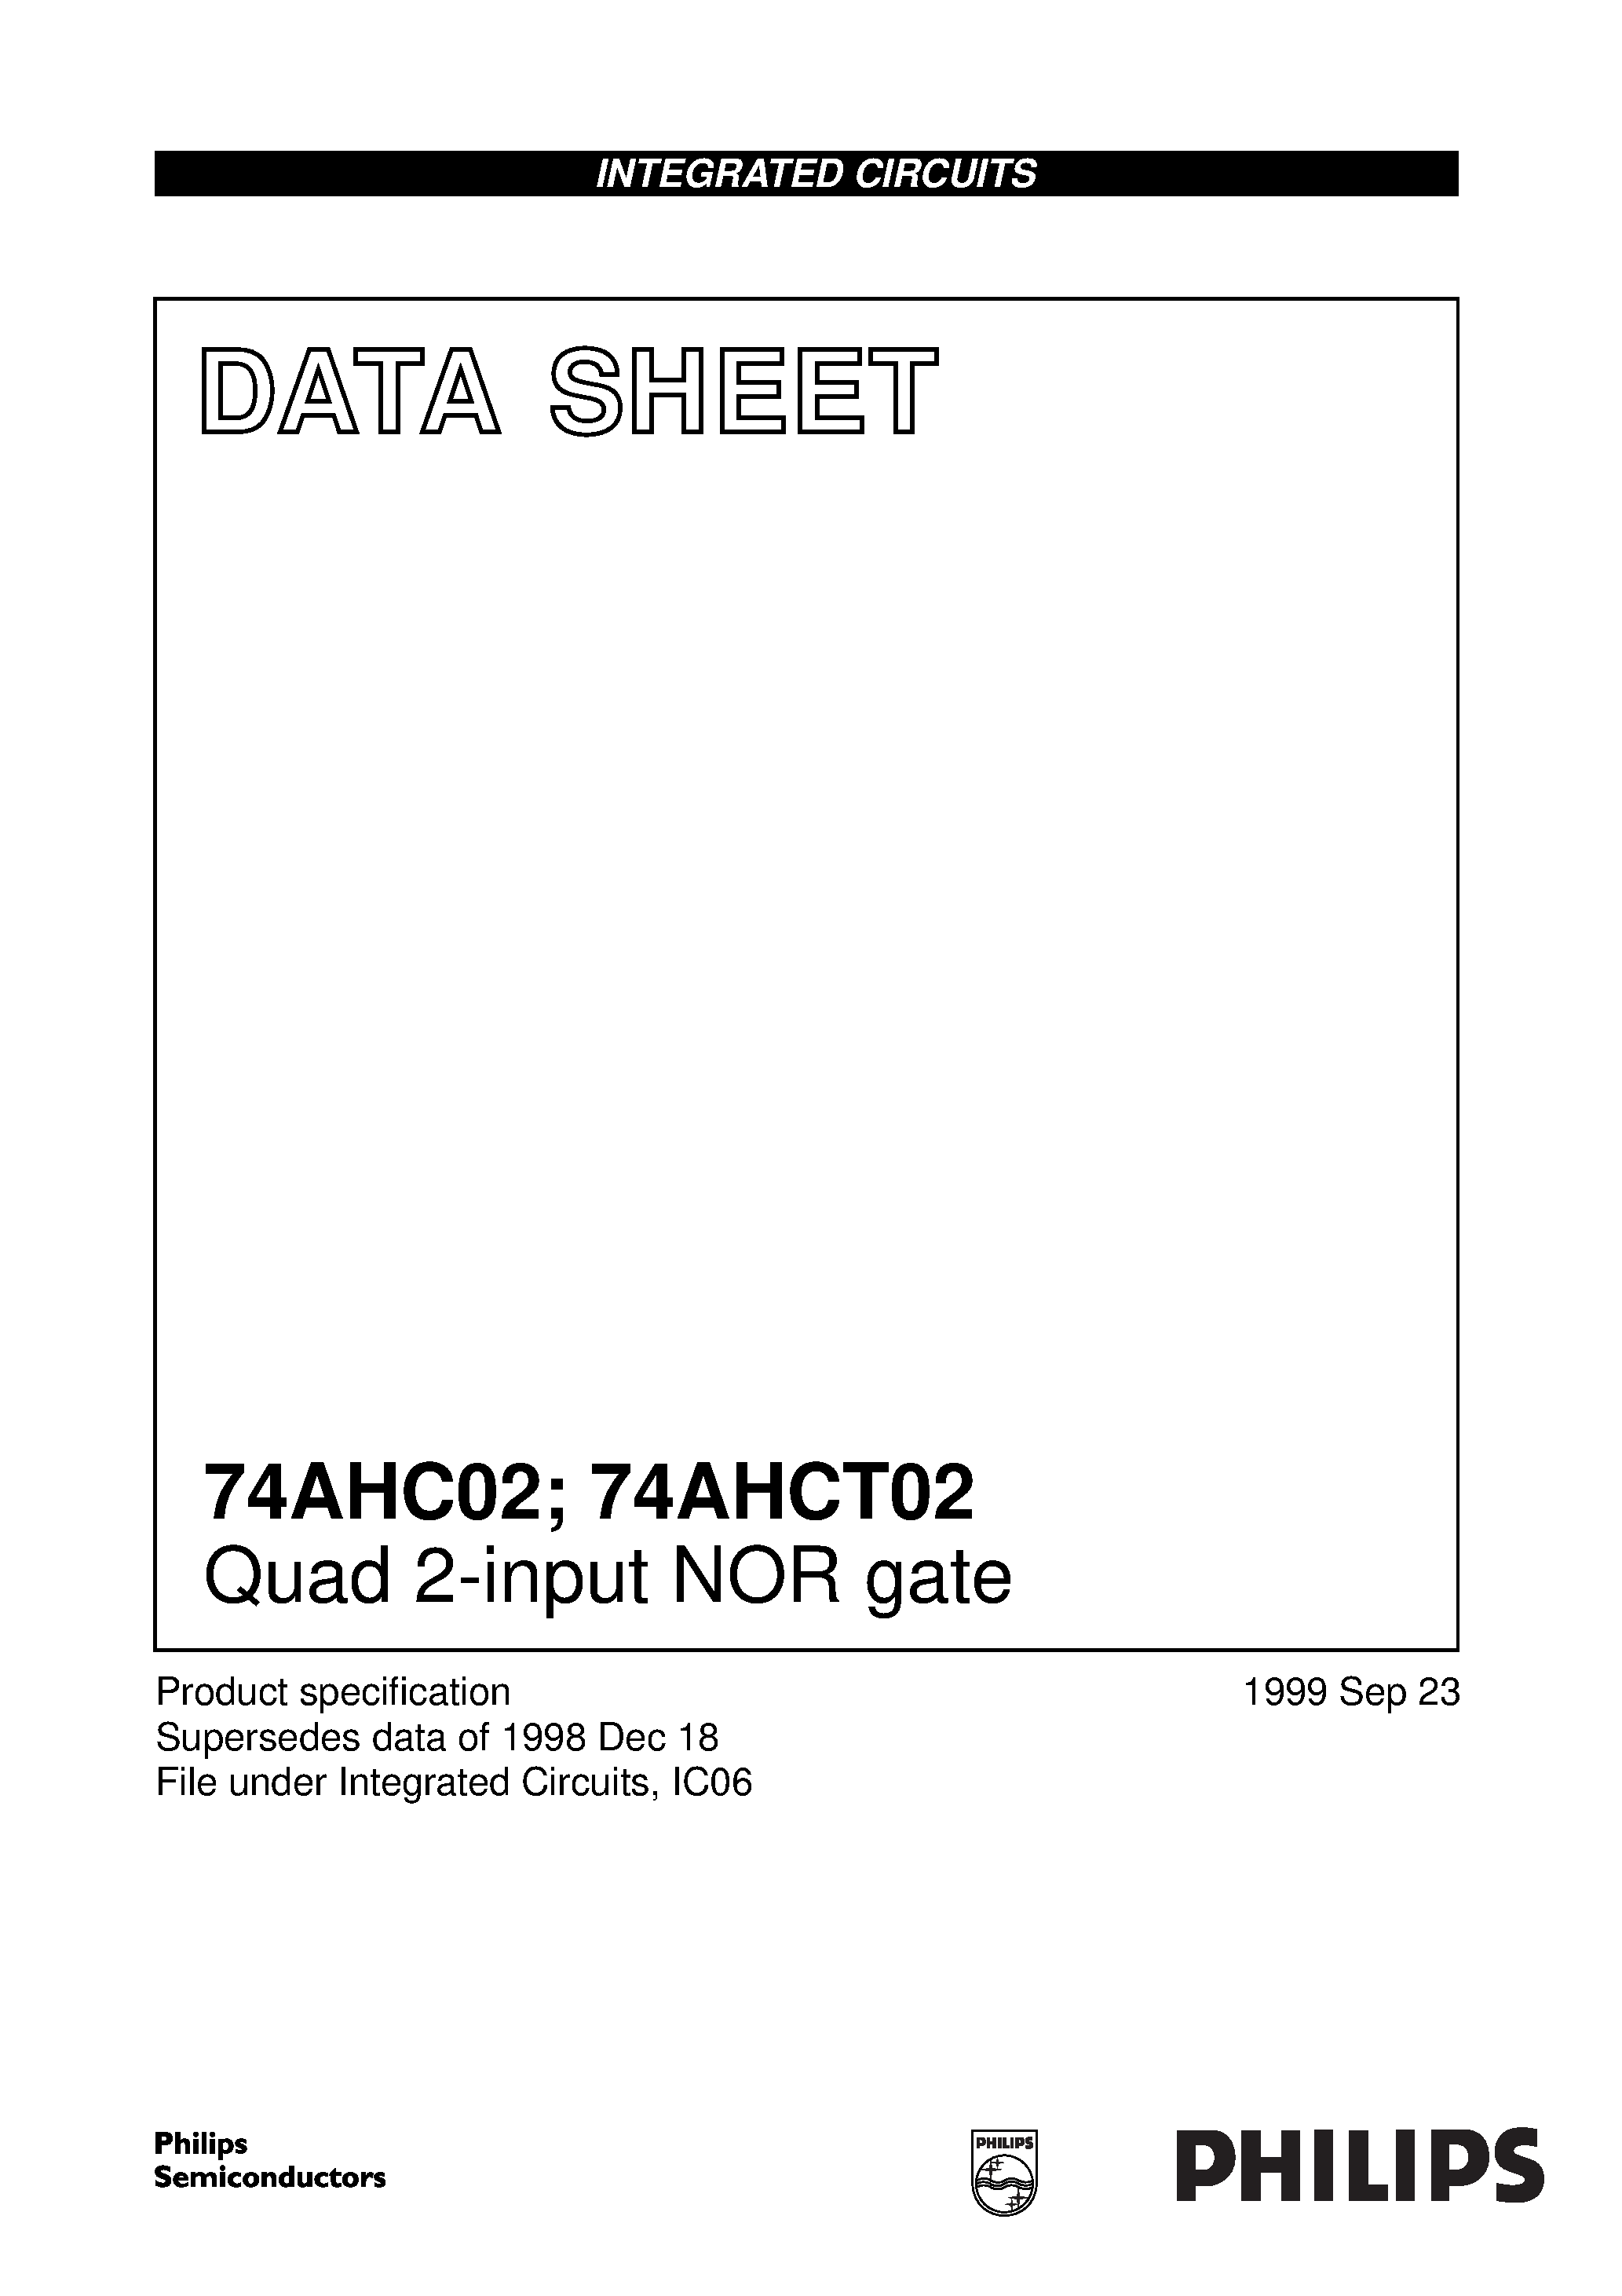 Даташит 74AHC02D - Quad 2-input NOR gate страница 1